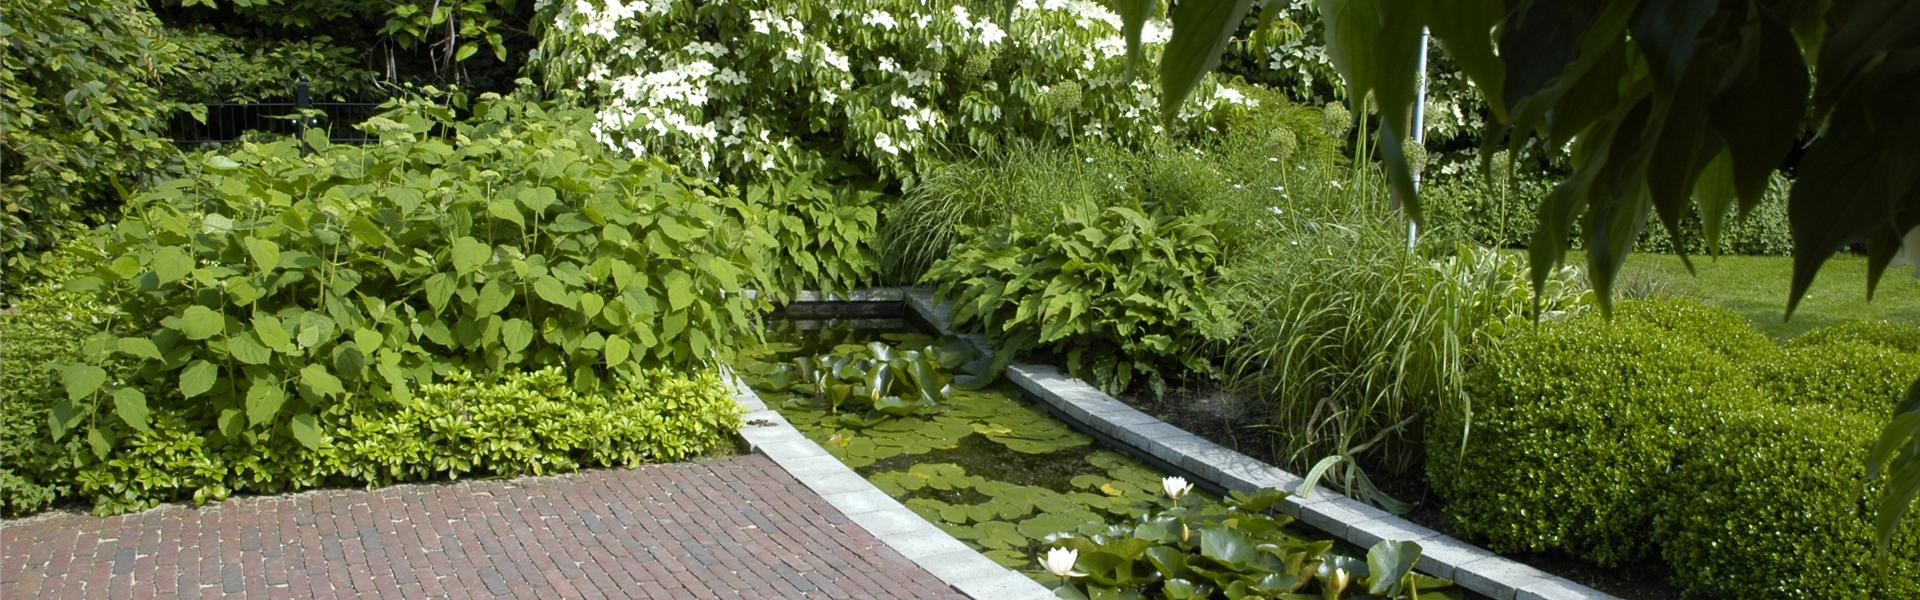 Patio-Garten mit Teich